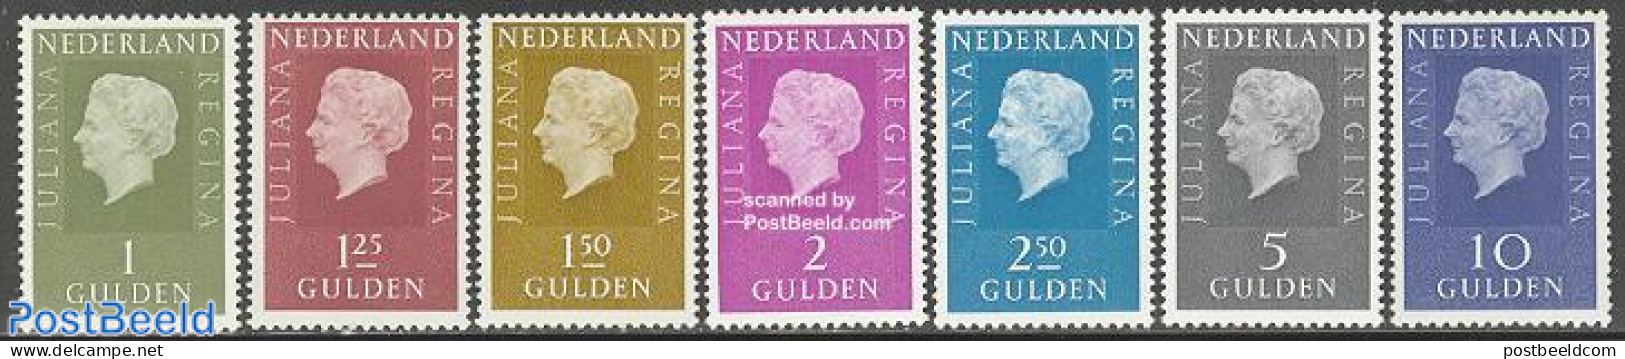 Netherlands 1969 Definitives 7v, Normal Paper, Unused (hinged) - Ungebraucht